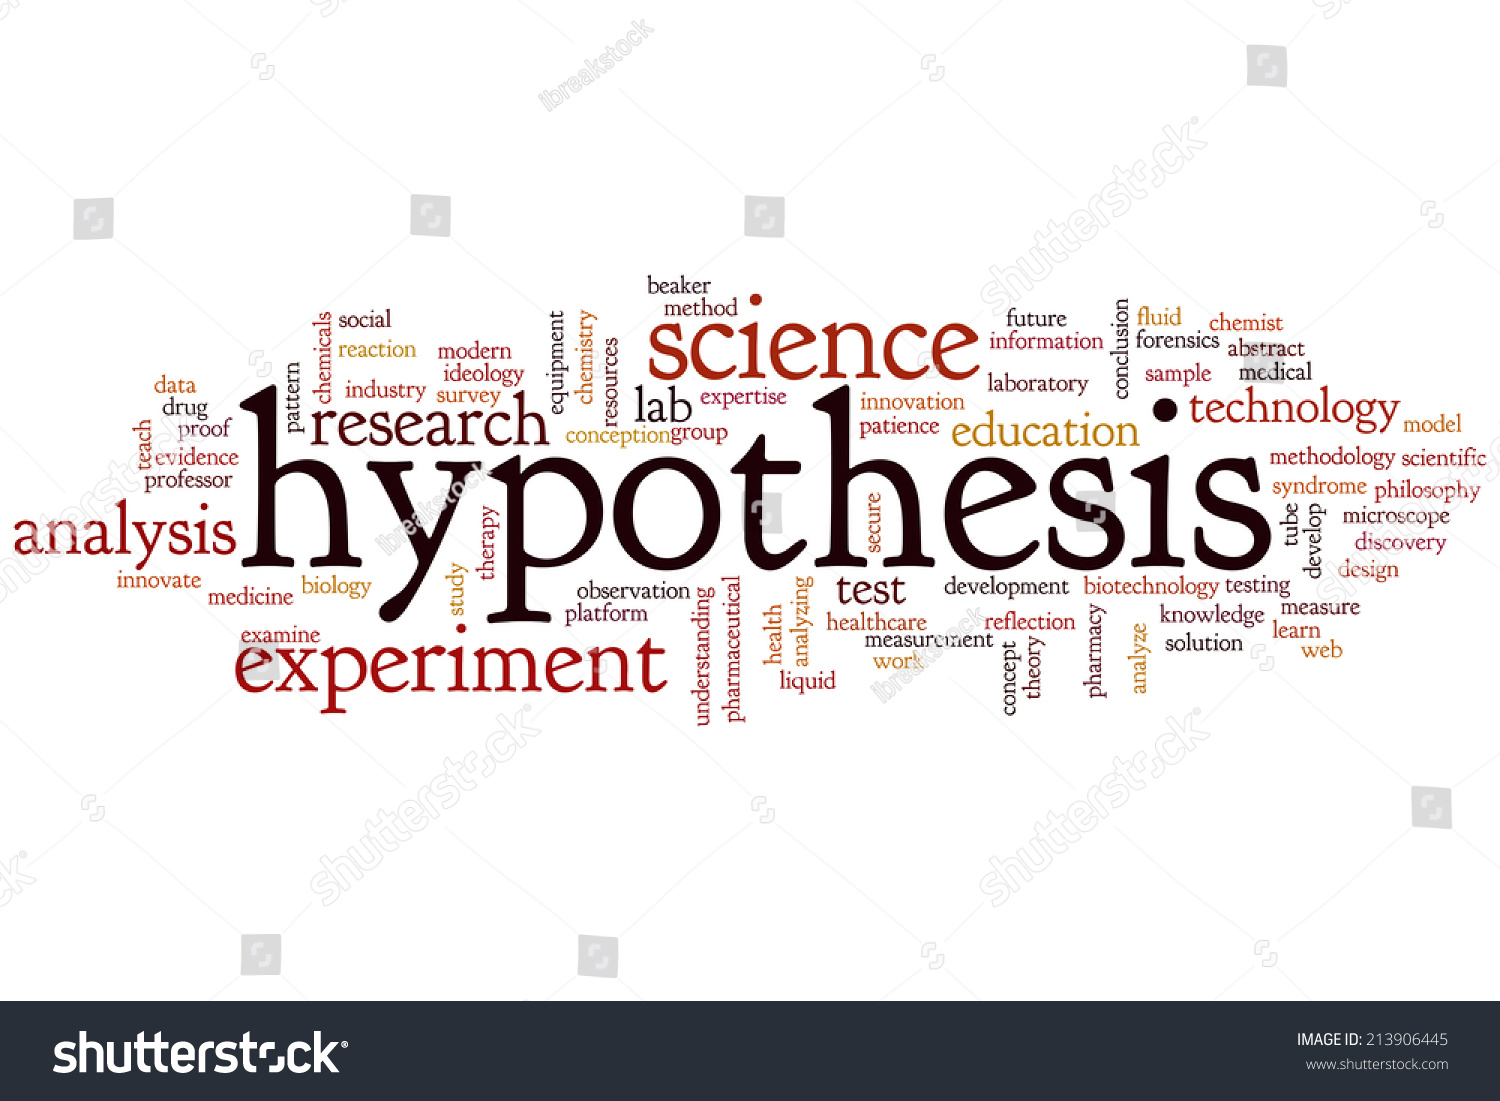 hypothesis word art